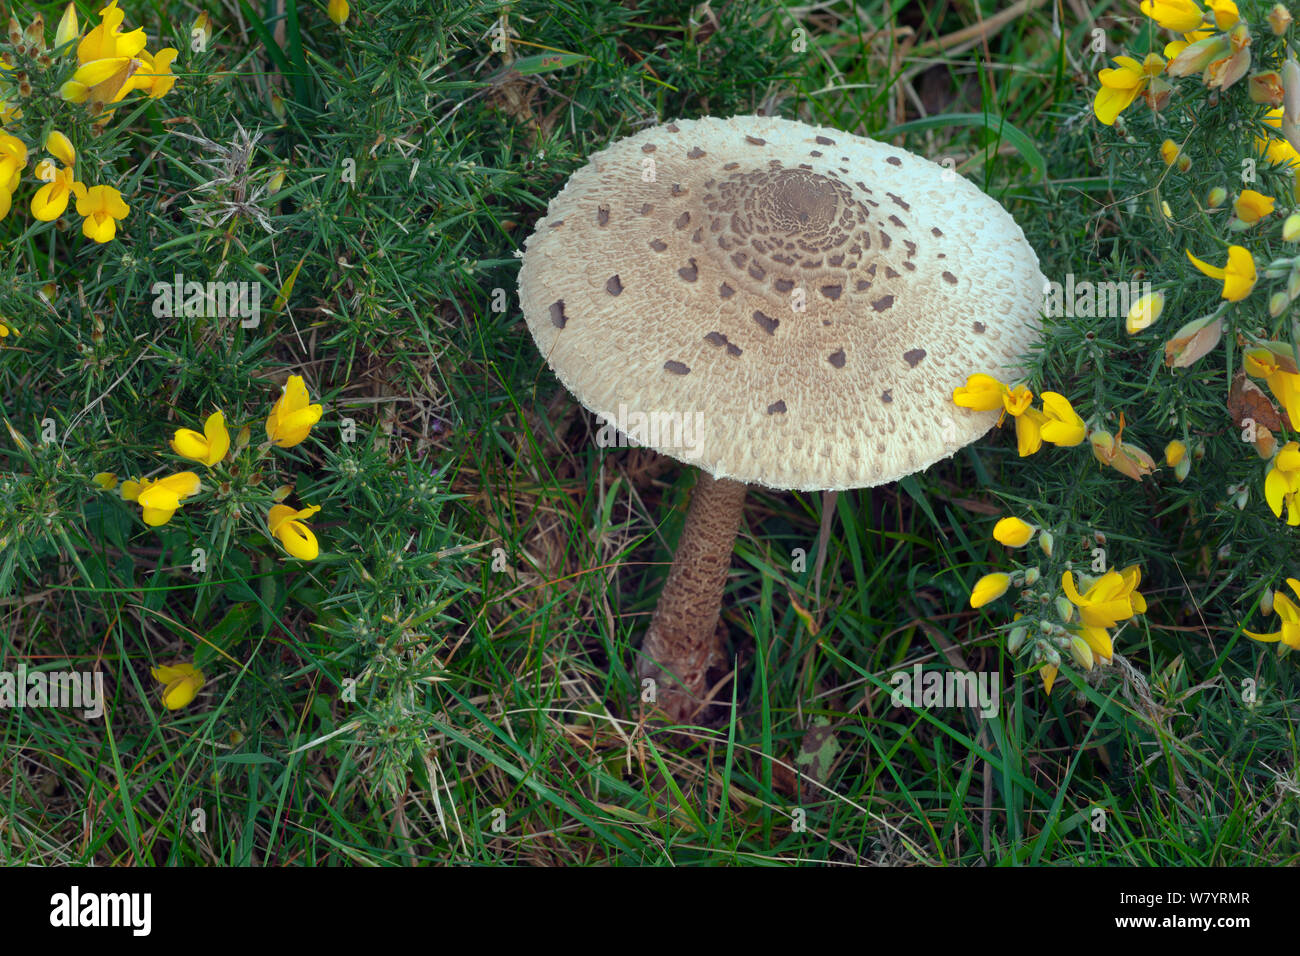 Parasol mushroom (Macrolepiota procera) surrounded by Gorse (Ulex europaeus) Norfolk, England, UK. October. Stock Photo